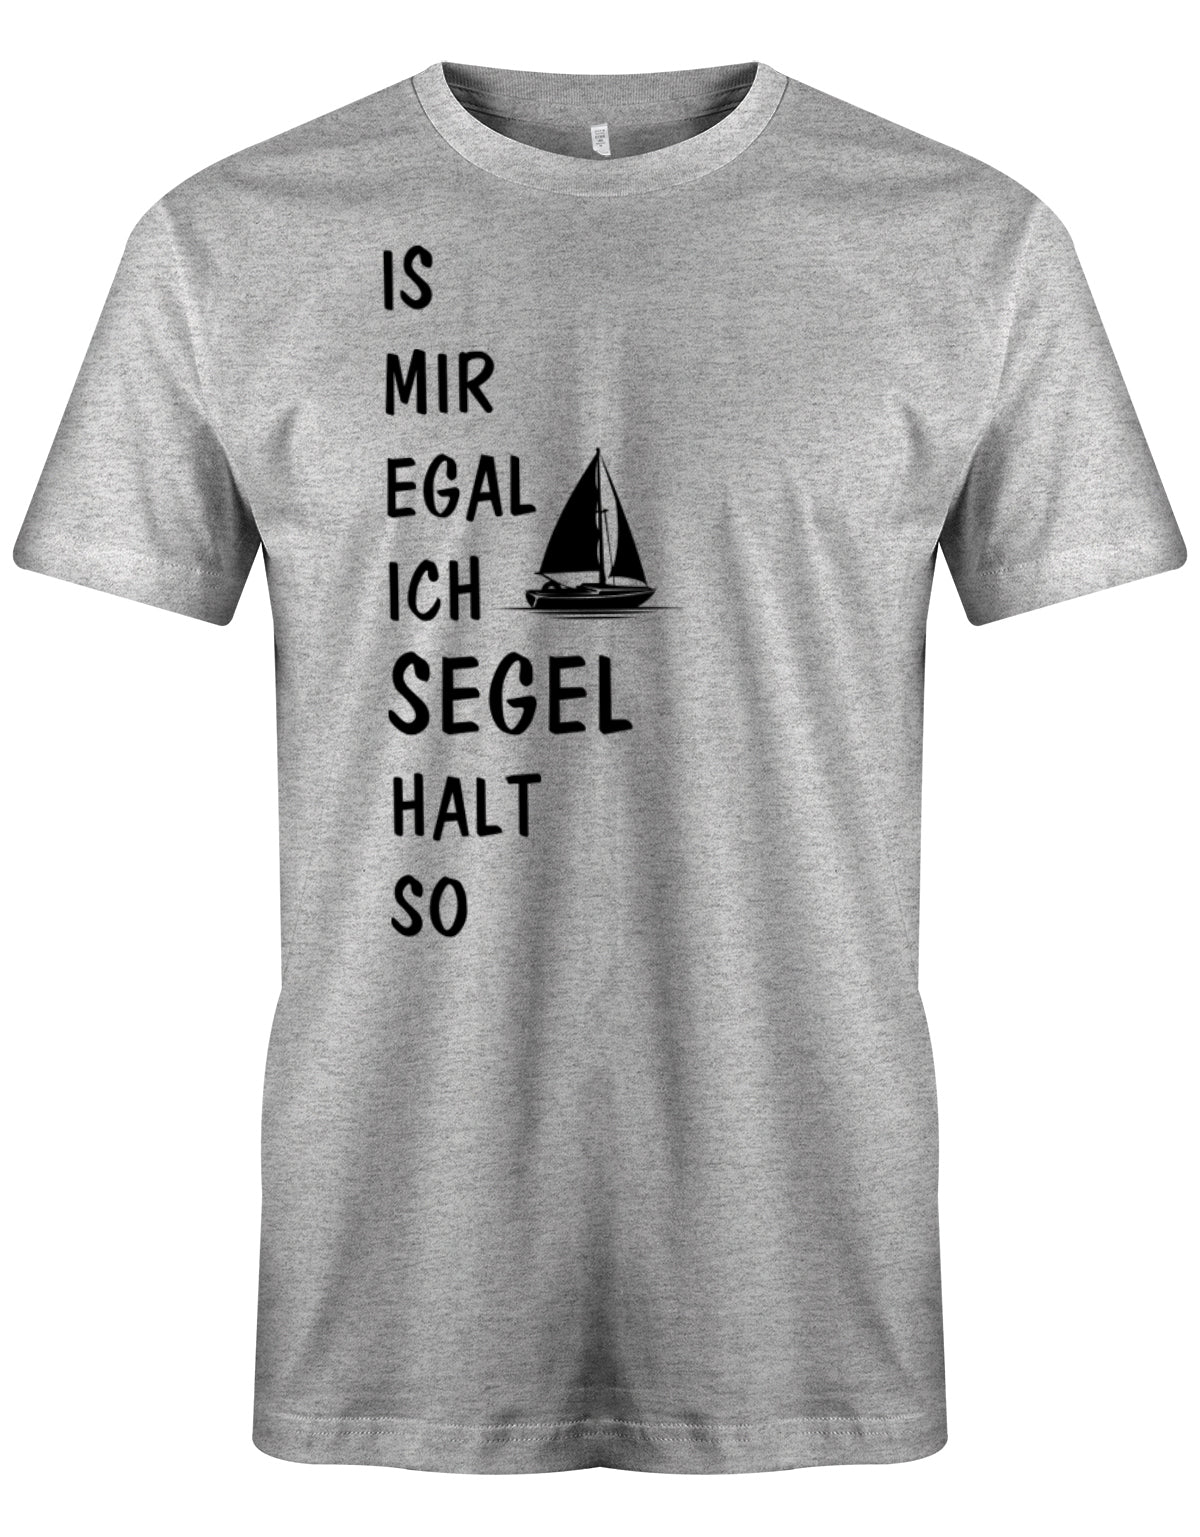 Das lustige Segler t-shirt bedruckt mit "Is mir Egal ich segel halt so" und einem Segelboot. Grau